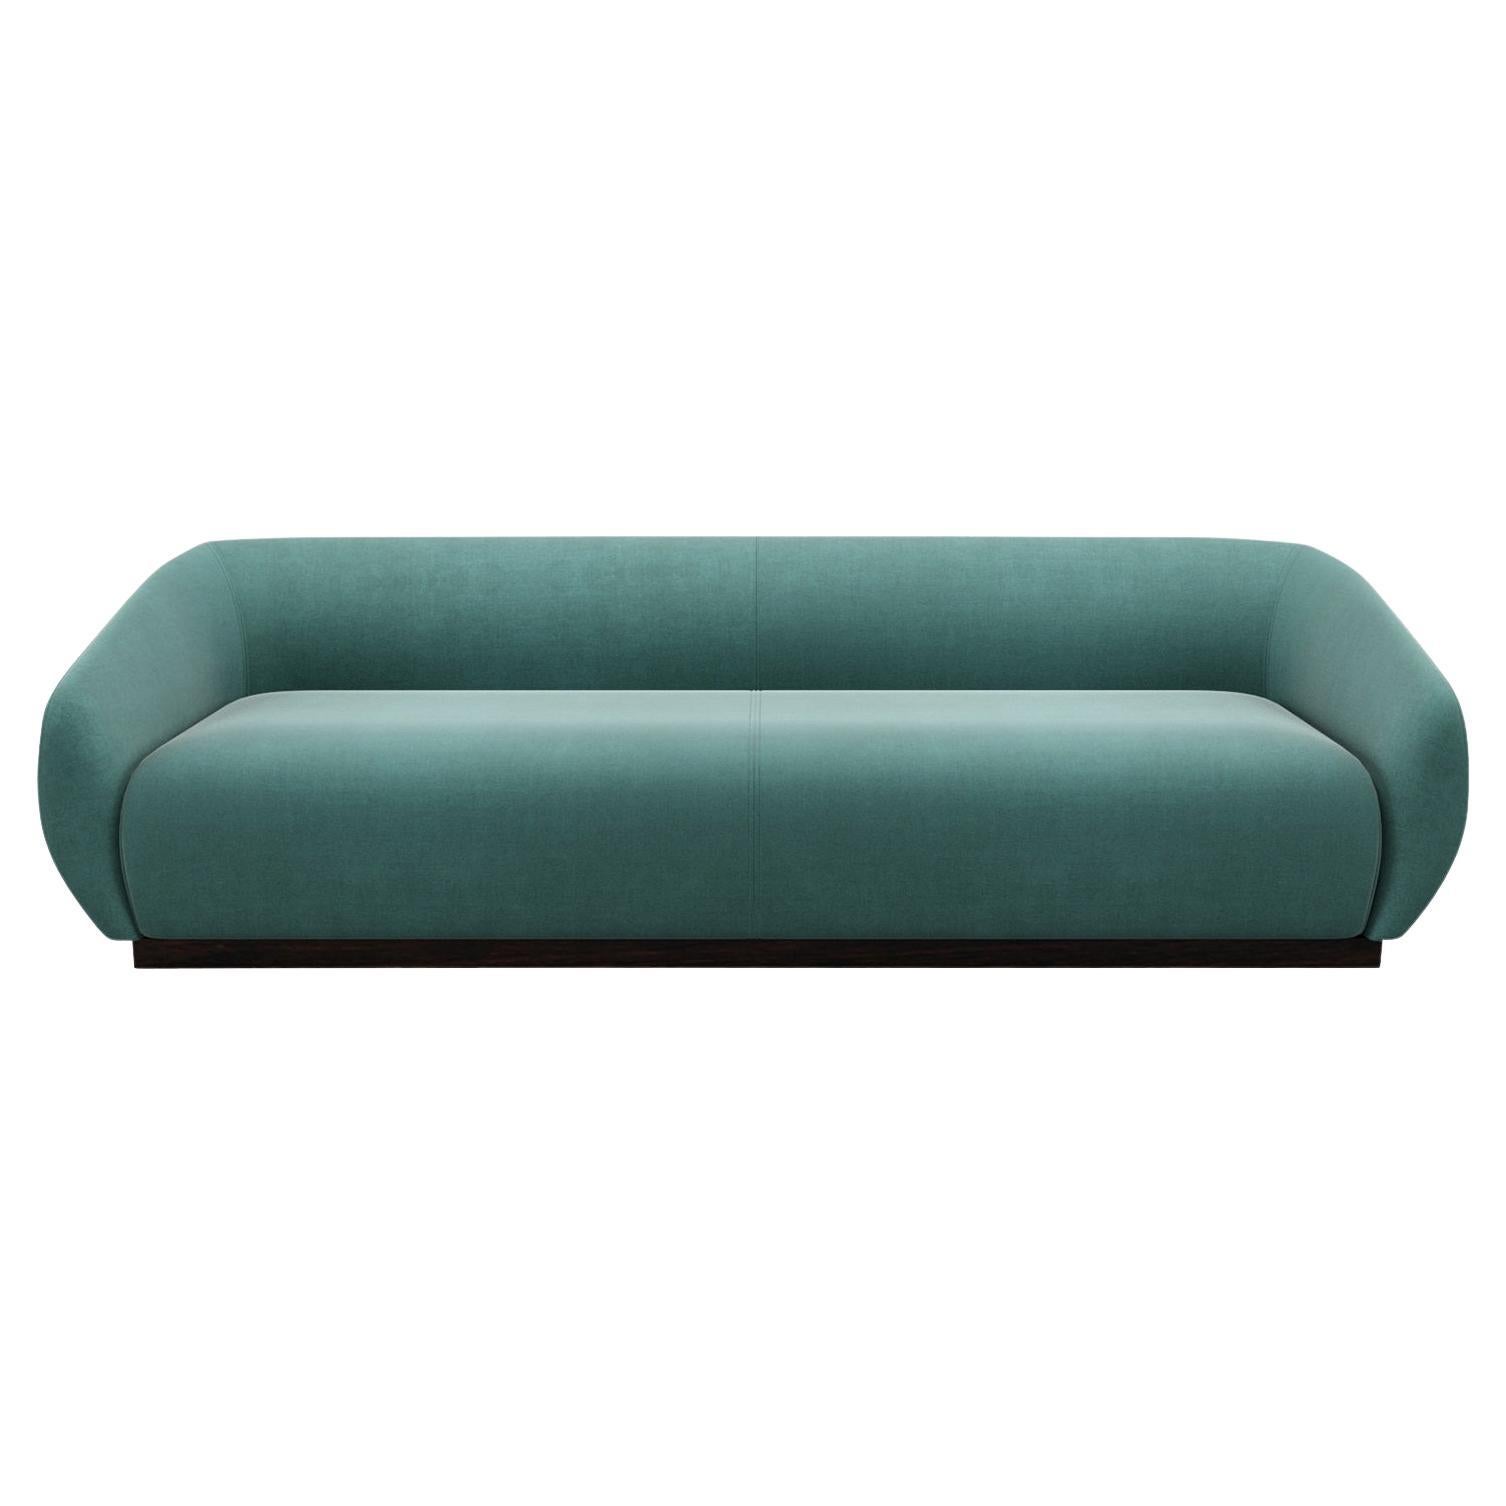 Contemporary Sofa Offered in Light Teal Velvet